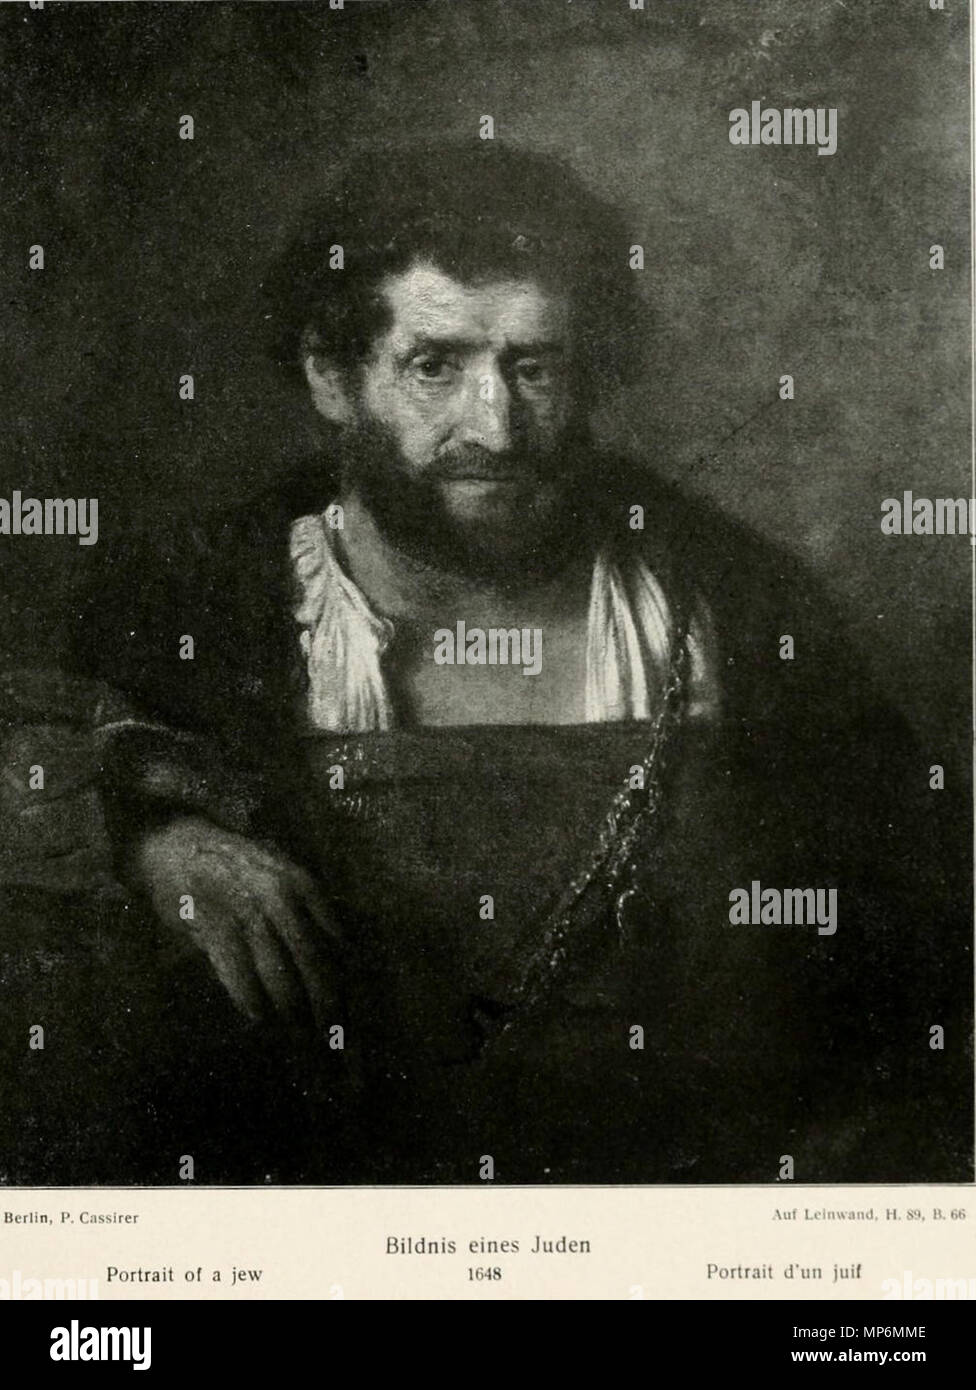 Inglese: Ritratto di un ebreo 1648. 1049 Rembrandt - Uomo con rimosse chemise Foto Stock